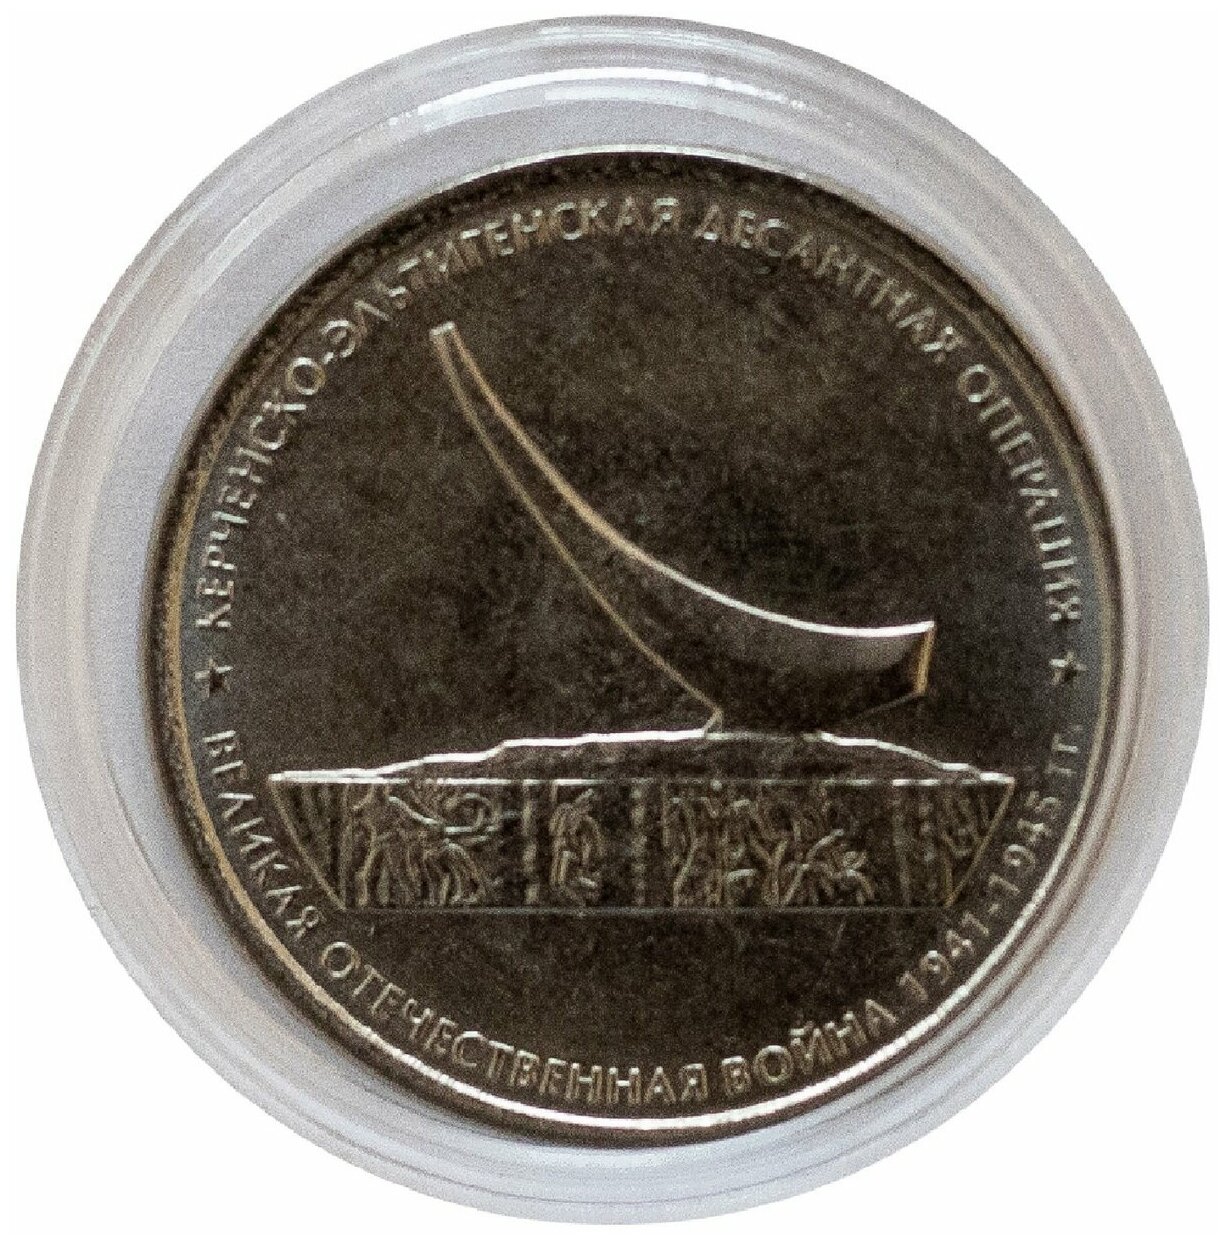 Памятная монета 5 рублей в капсуле Керченско-Эльтигенская десантная операция. ММД, 2015 г. в. UNC